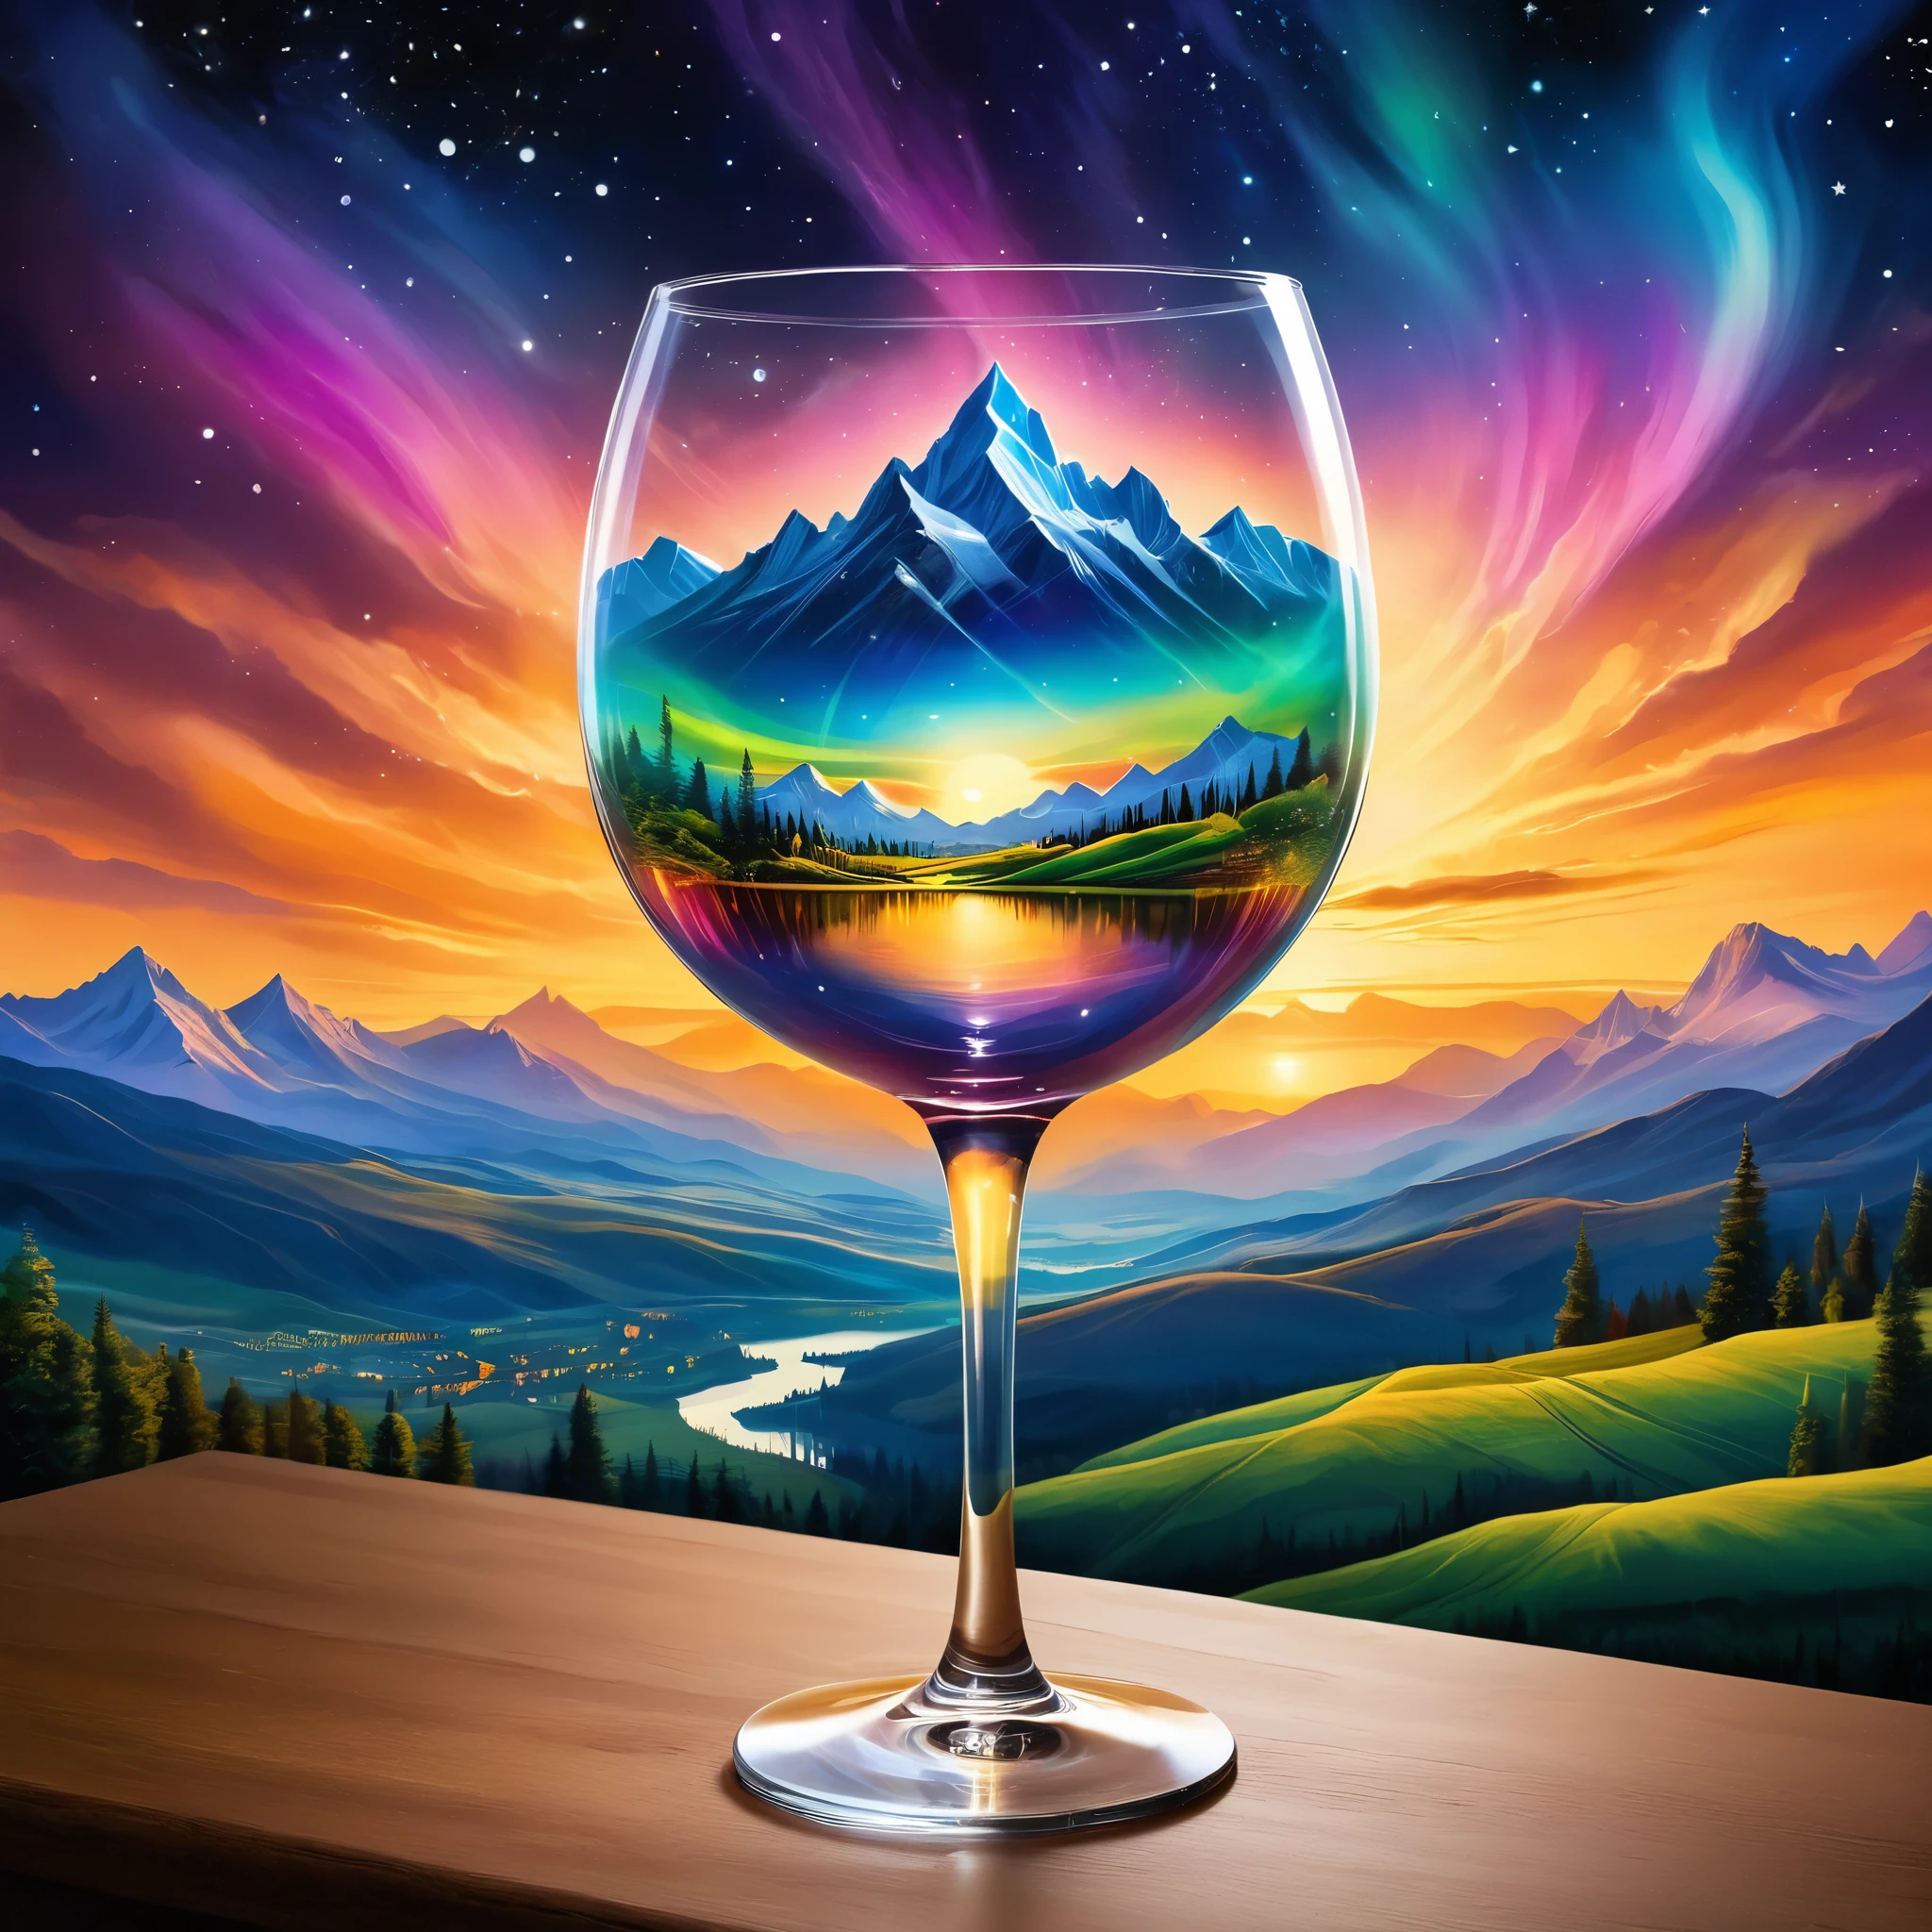 Crie uma cena celestial dentro de uma taça de vinho, apresentando uma paisagem surreal com montanhas e um céu aurora. O fundo inclui um pôr do sol brilhante e uma paisagem urbana. O estilo deve ser fantasia com elementos etéreos. foto hiper realista, cores super vibrantes, 16k